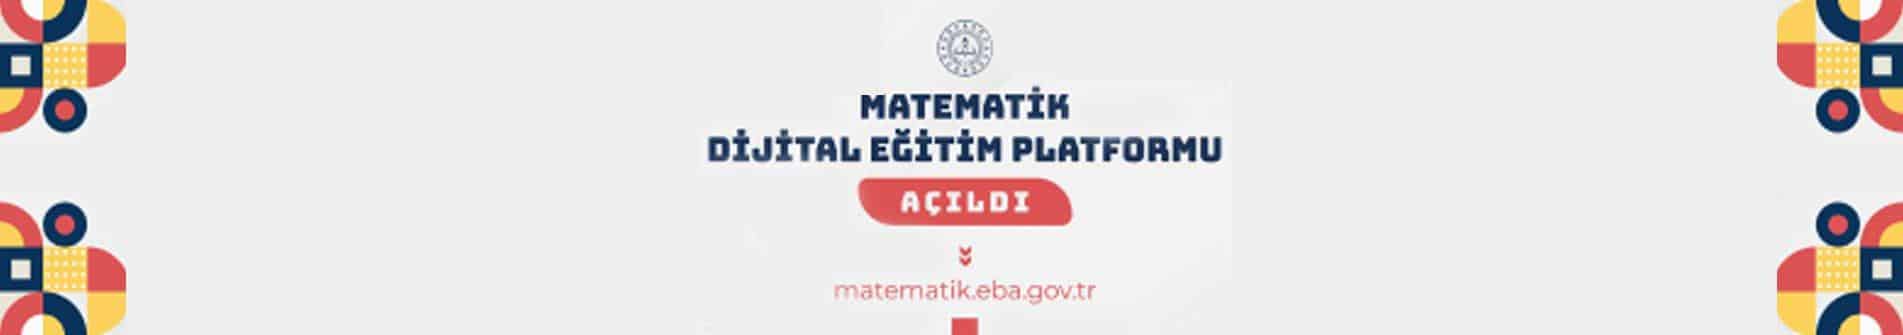 Matematik Dijital Eğitim Platformu